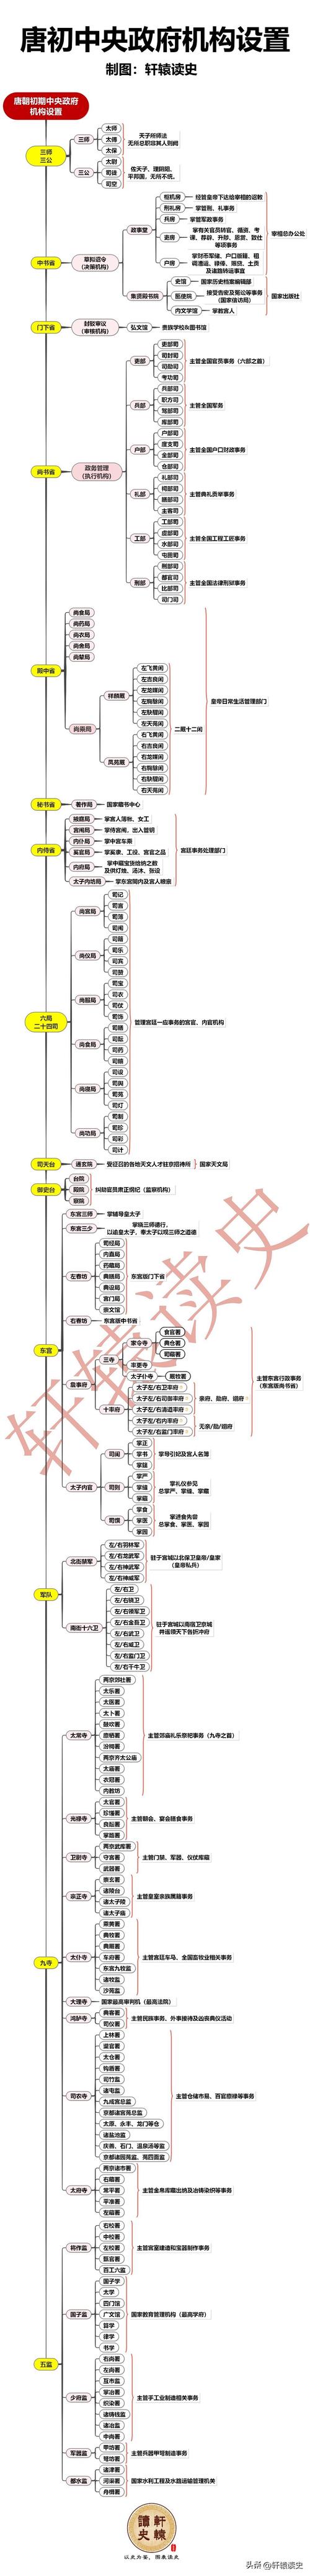 12张长图解读唐宋元明清五个朝代的官制体系